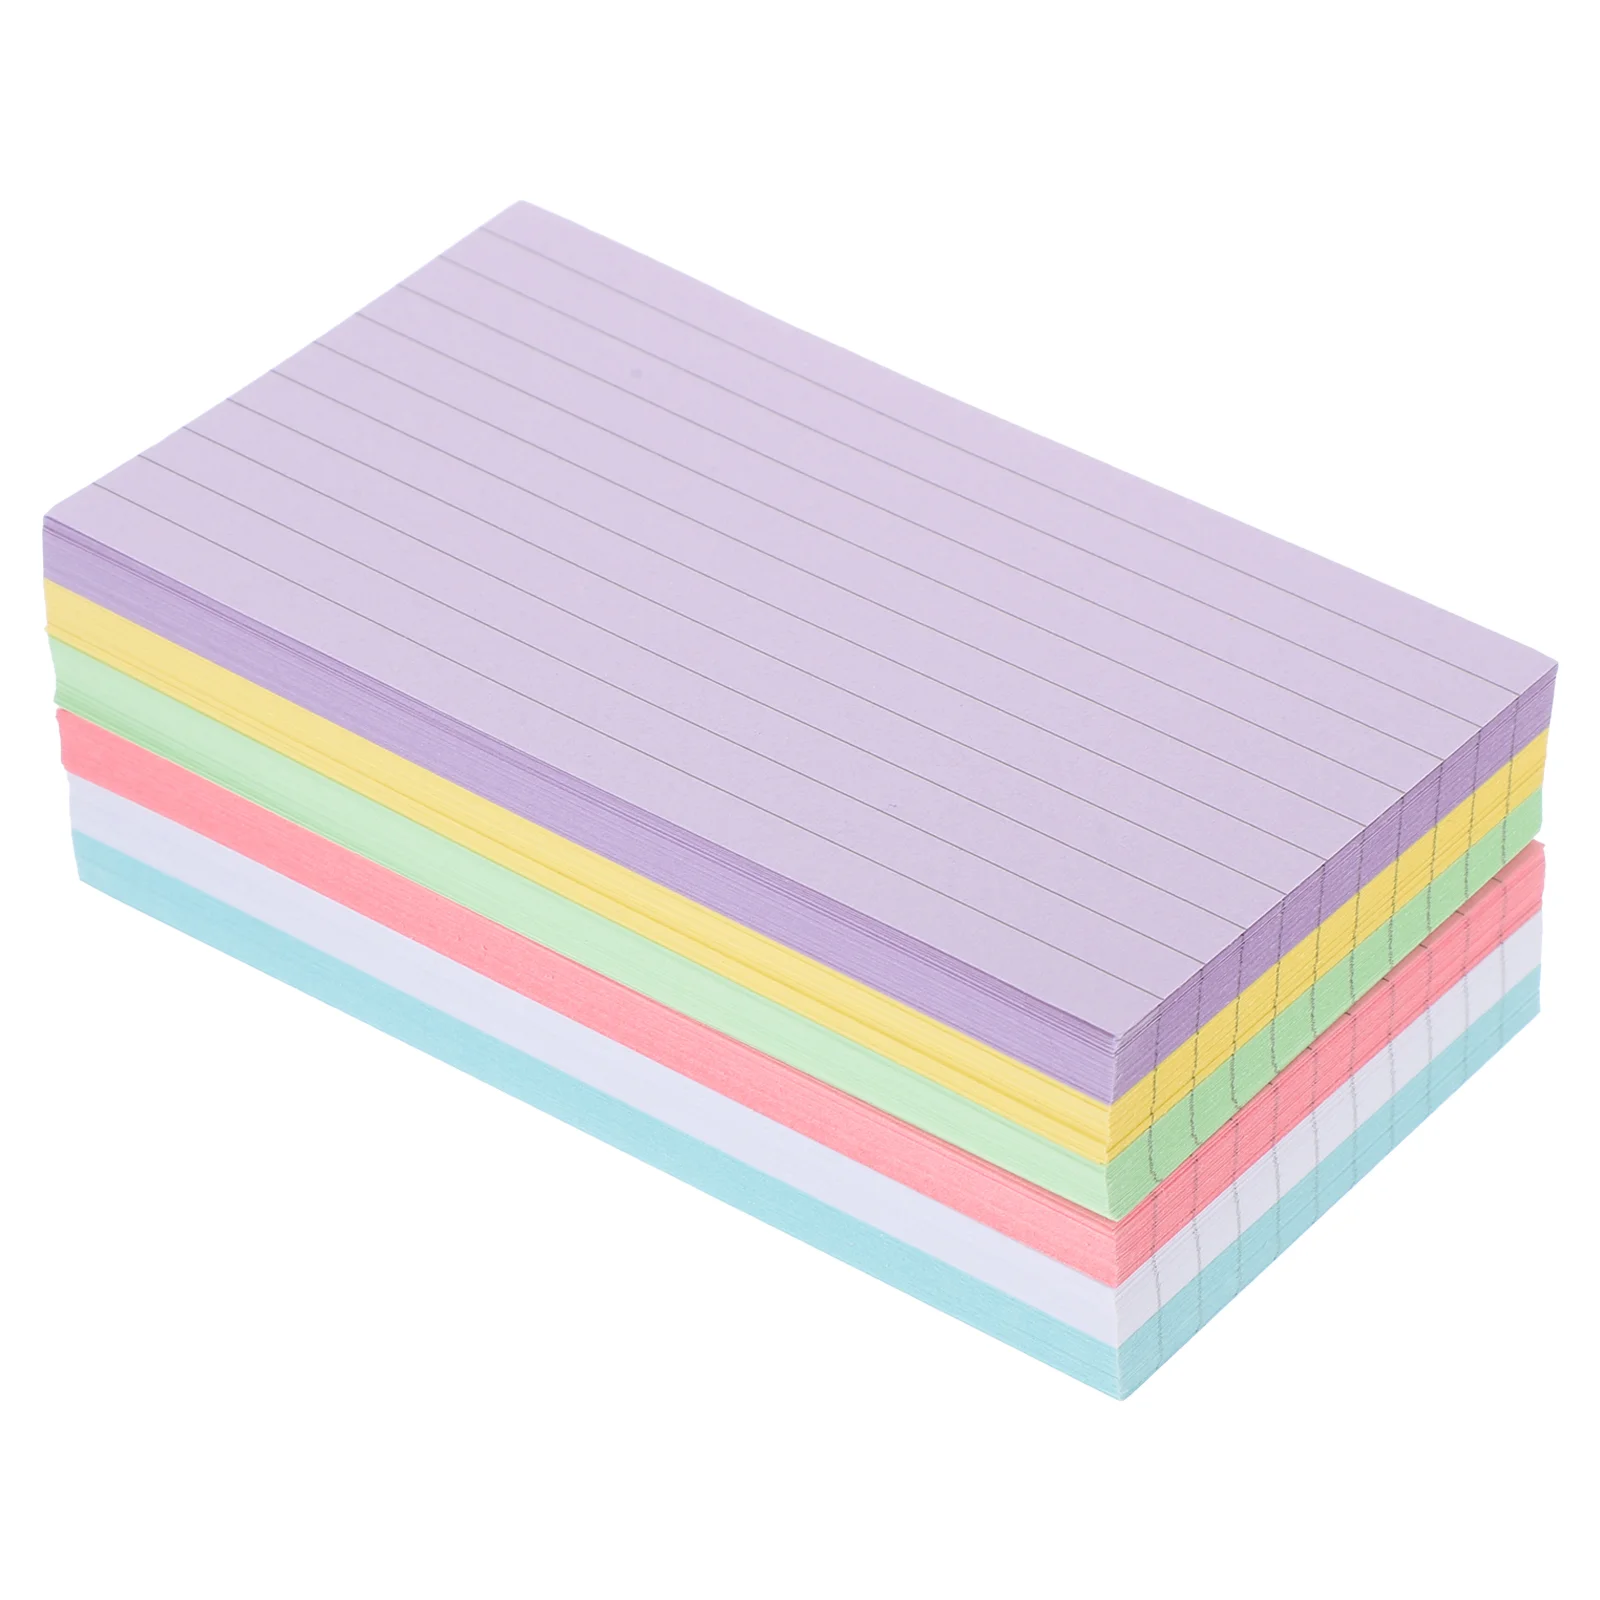 

Цветные индексные карты, бумажные флэшки, сделайте свои собственные красочные карты памяти, маленькие блокноты